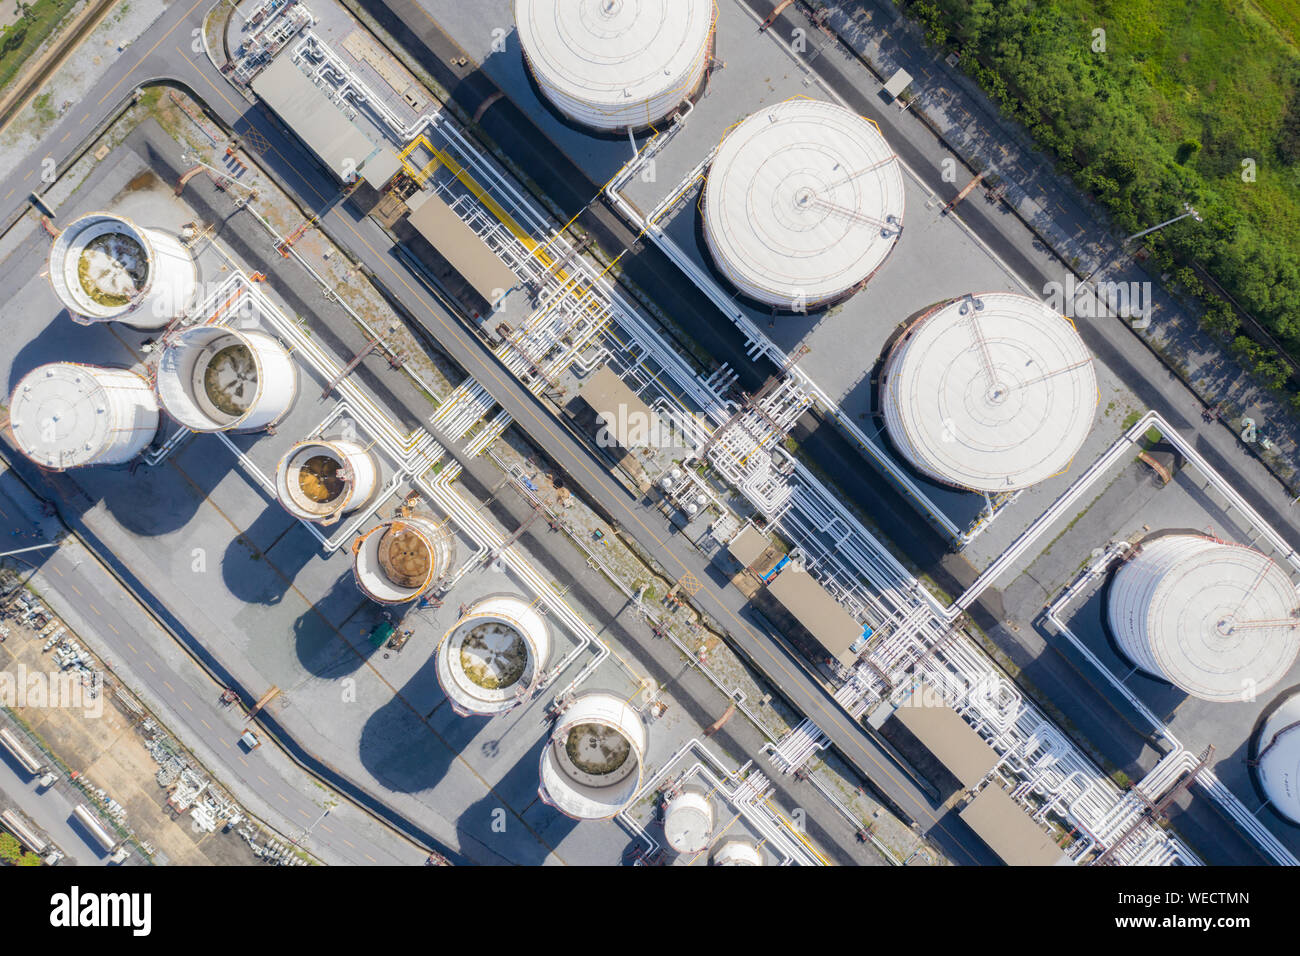 Vista aerea della industria chimica serbatoio di stoccaggio e autocisterna In wailting in impianto industriale per indirizzare l'olio alla stazione di gas. Foto Stock